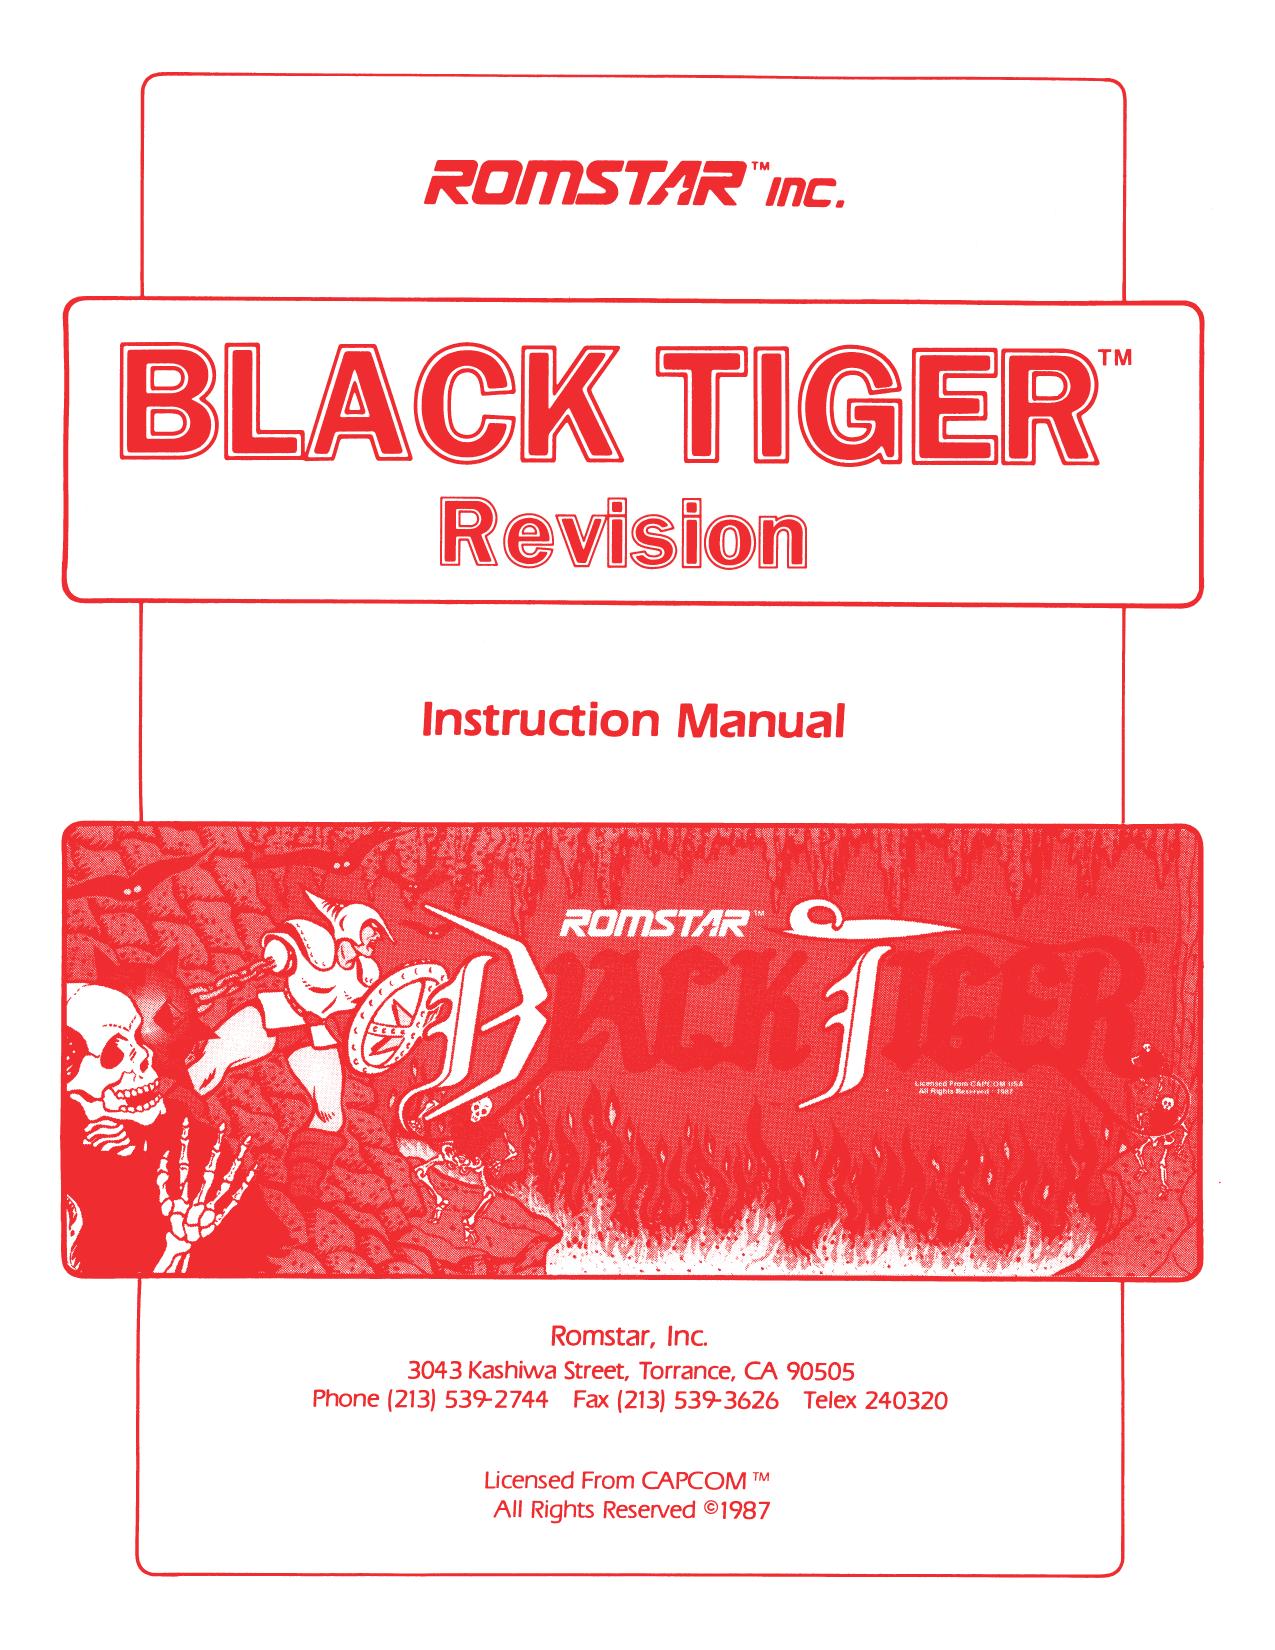 Romstar Black Tiger Manual